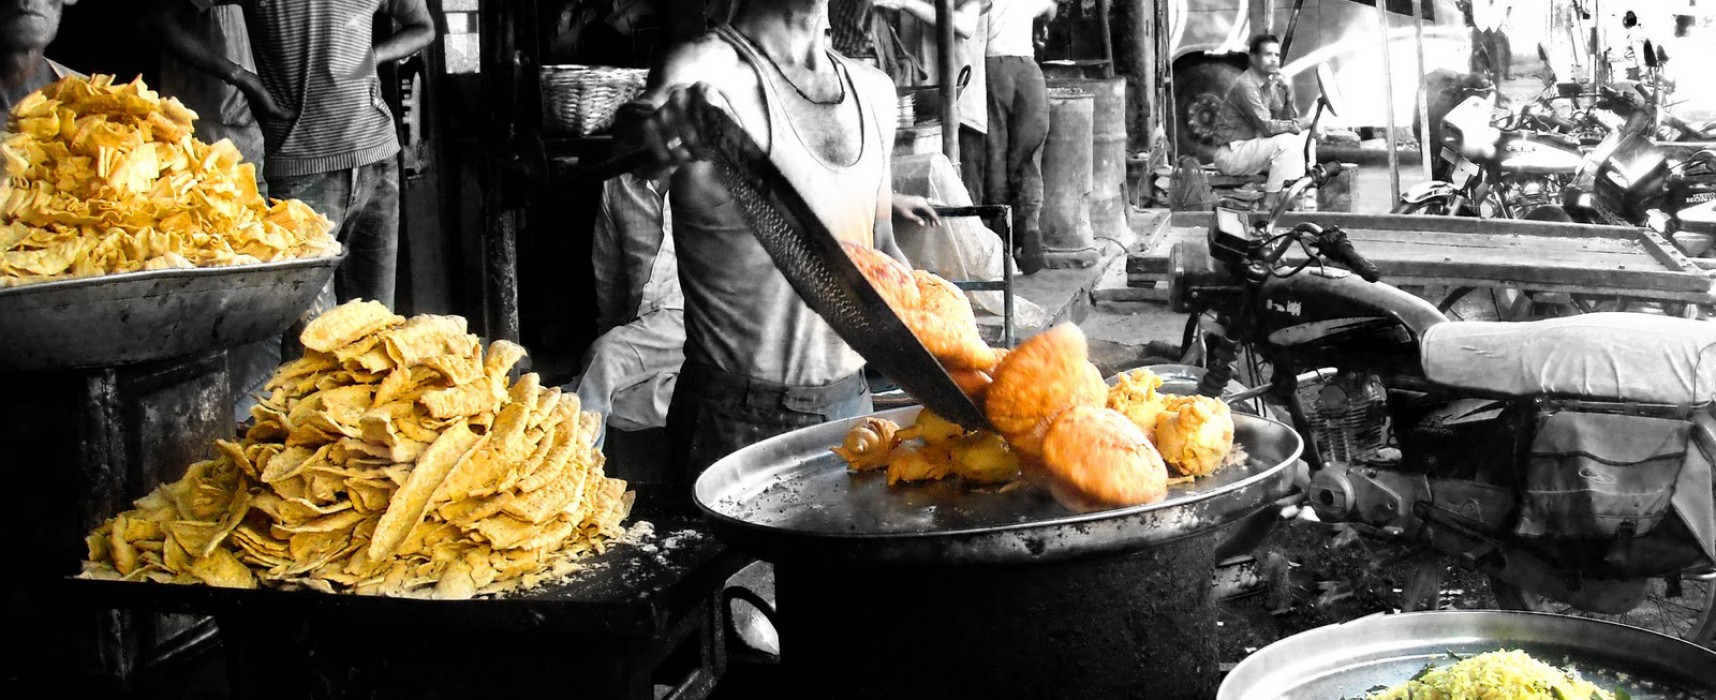 Street Foods: India’s Epicurean Delight